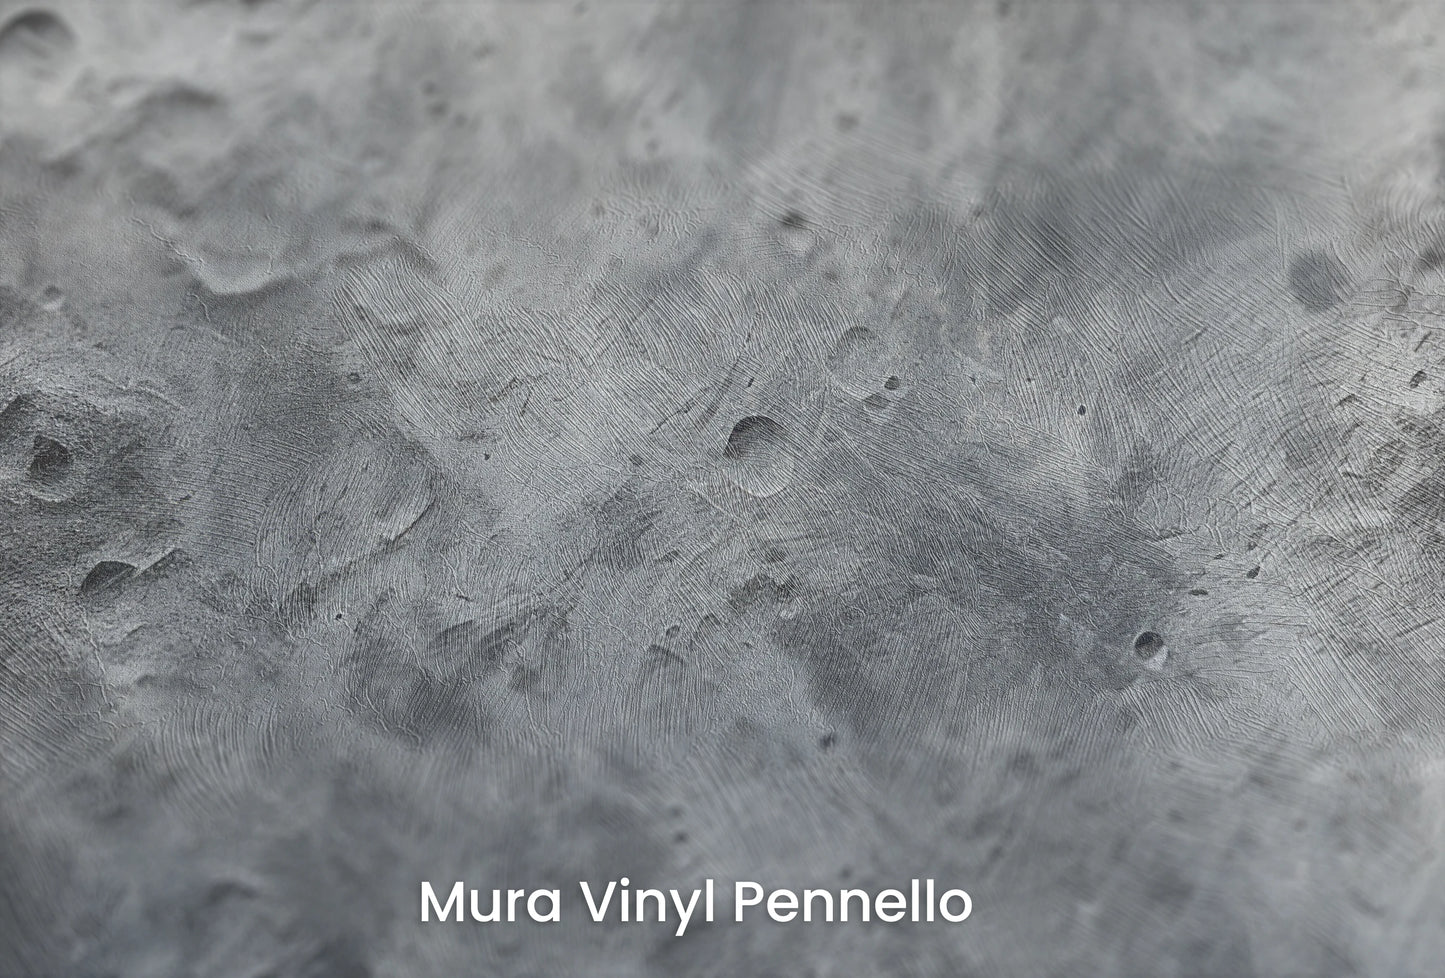 Zbliżenie na artystyczną fototapetę o nazwie Solar Fusion na podłożu Mura Vinyl Pennello - faktura pociągnięć pędzla malarskiego.